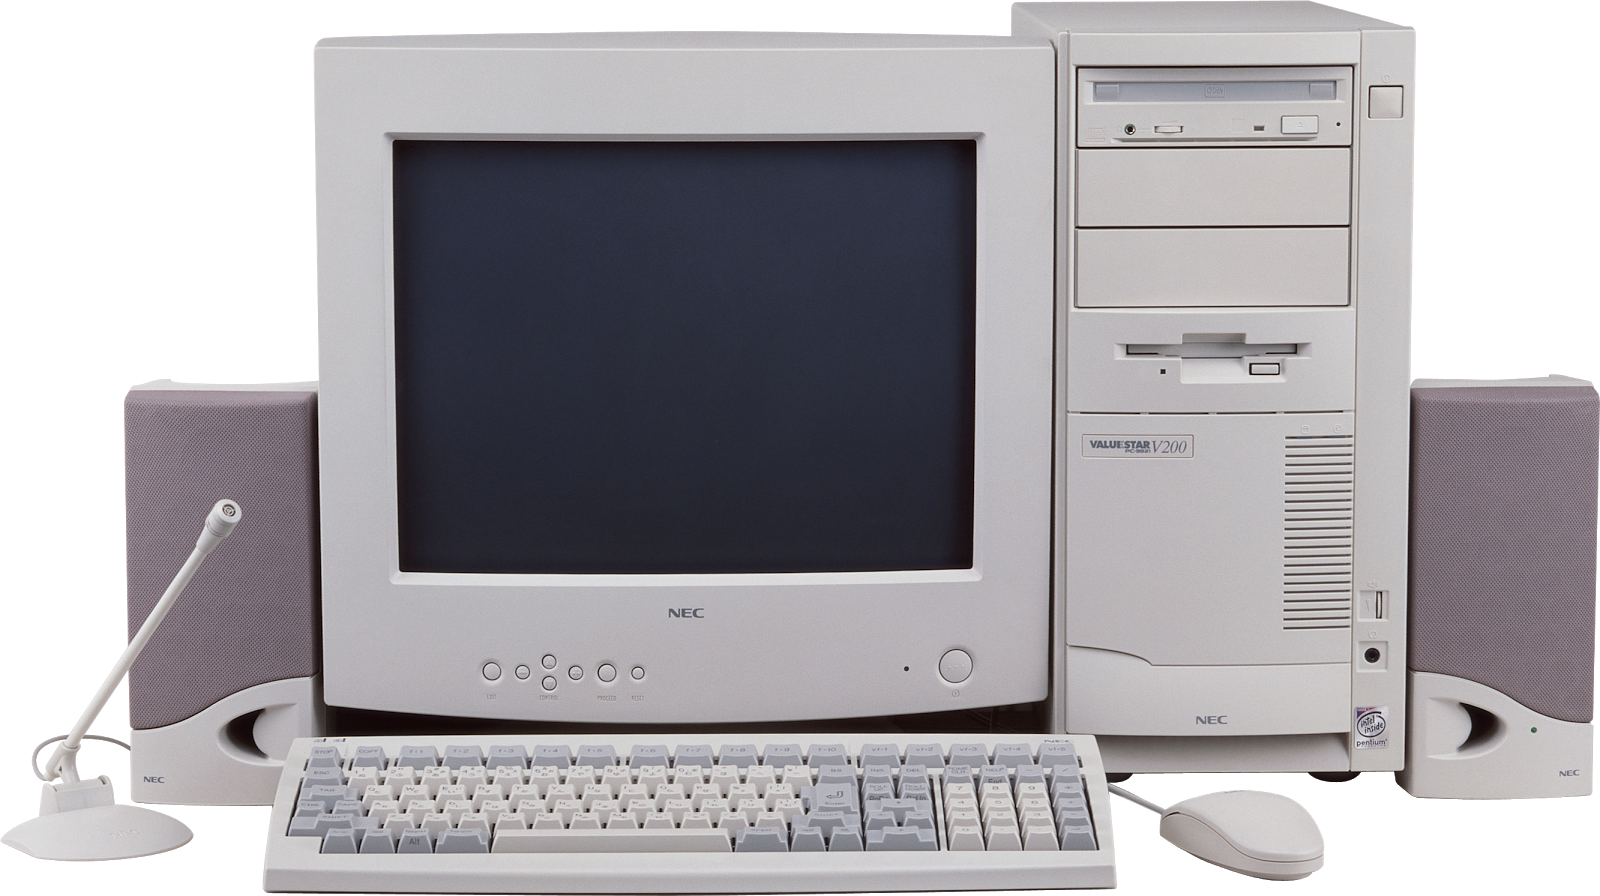 Компьютеры 98 года. Компьютер комплект. Компьютер NEC. ПК NEC компьютер. Базовый комплект компьютера.